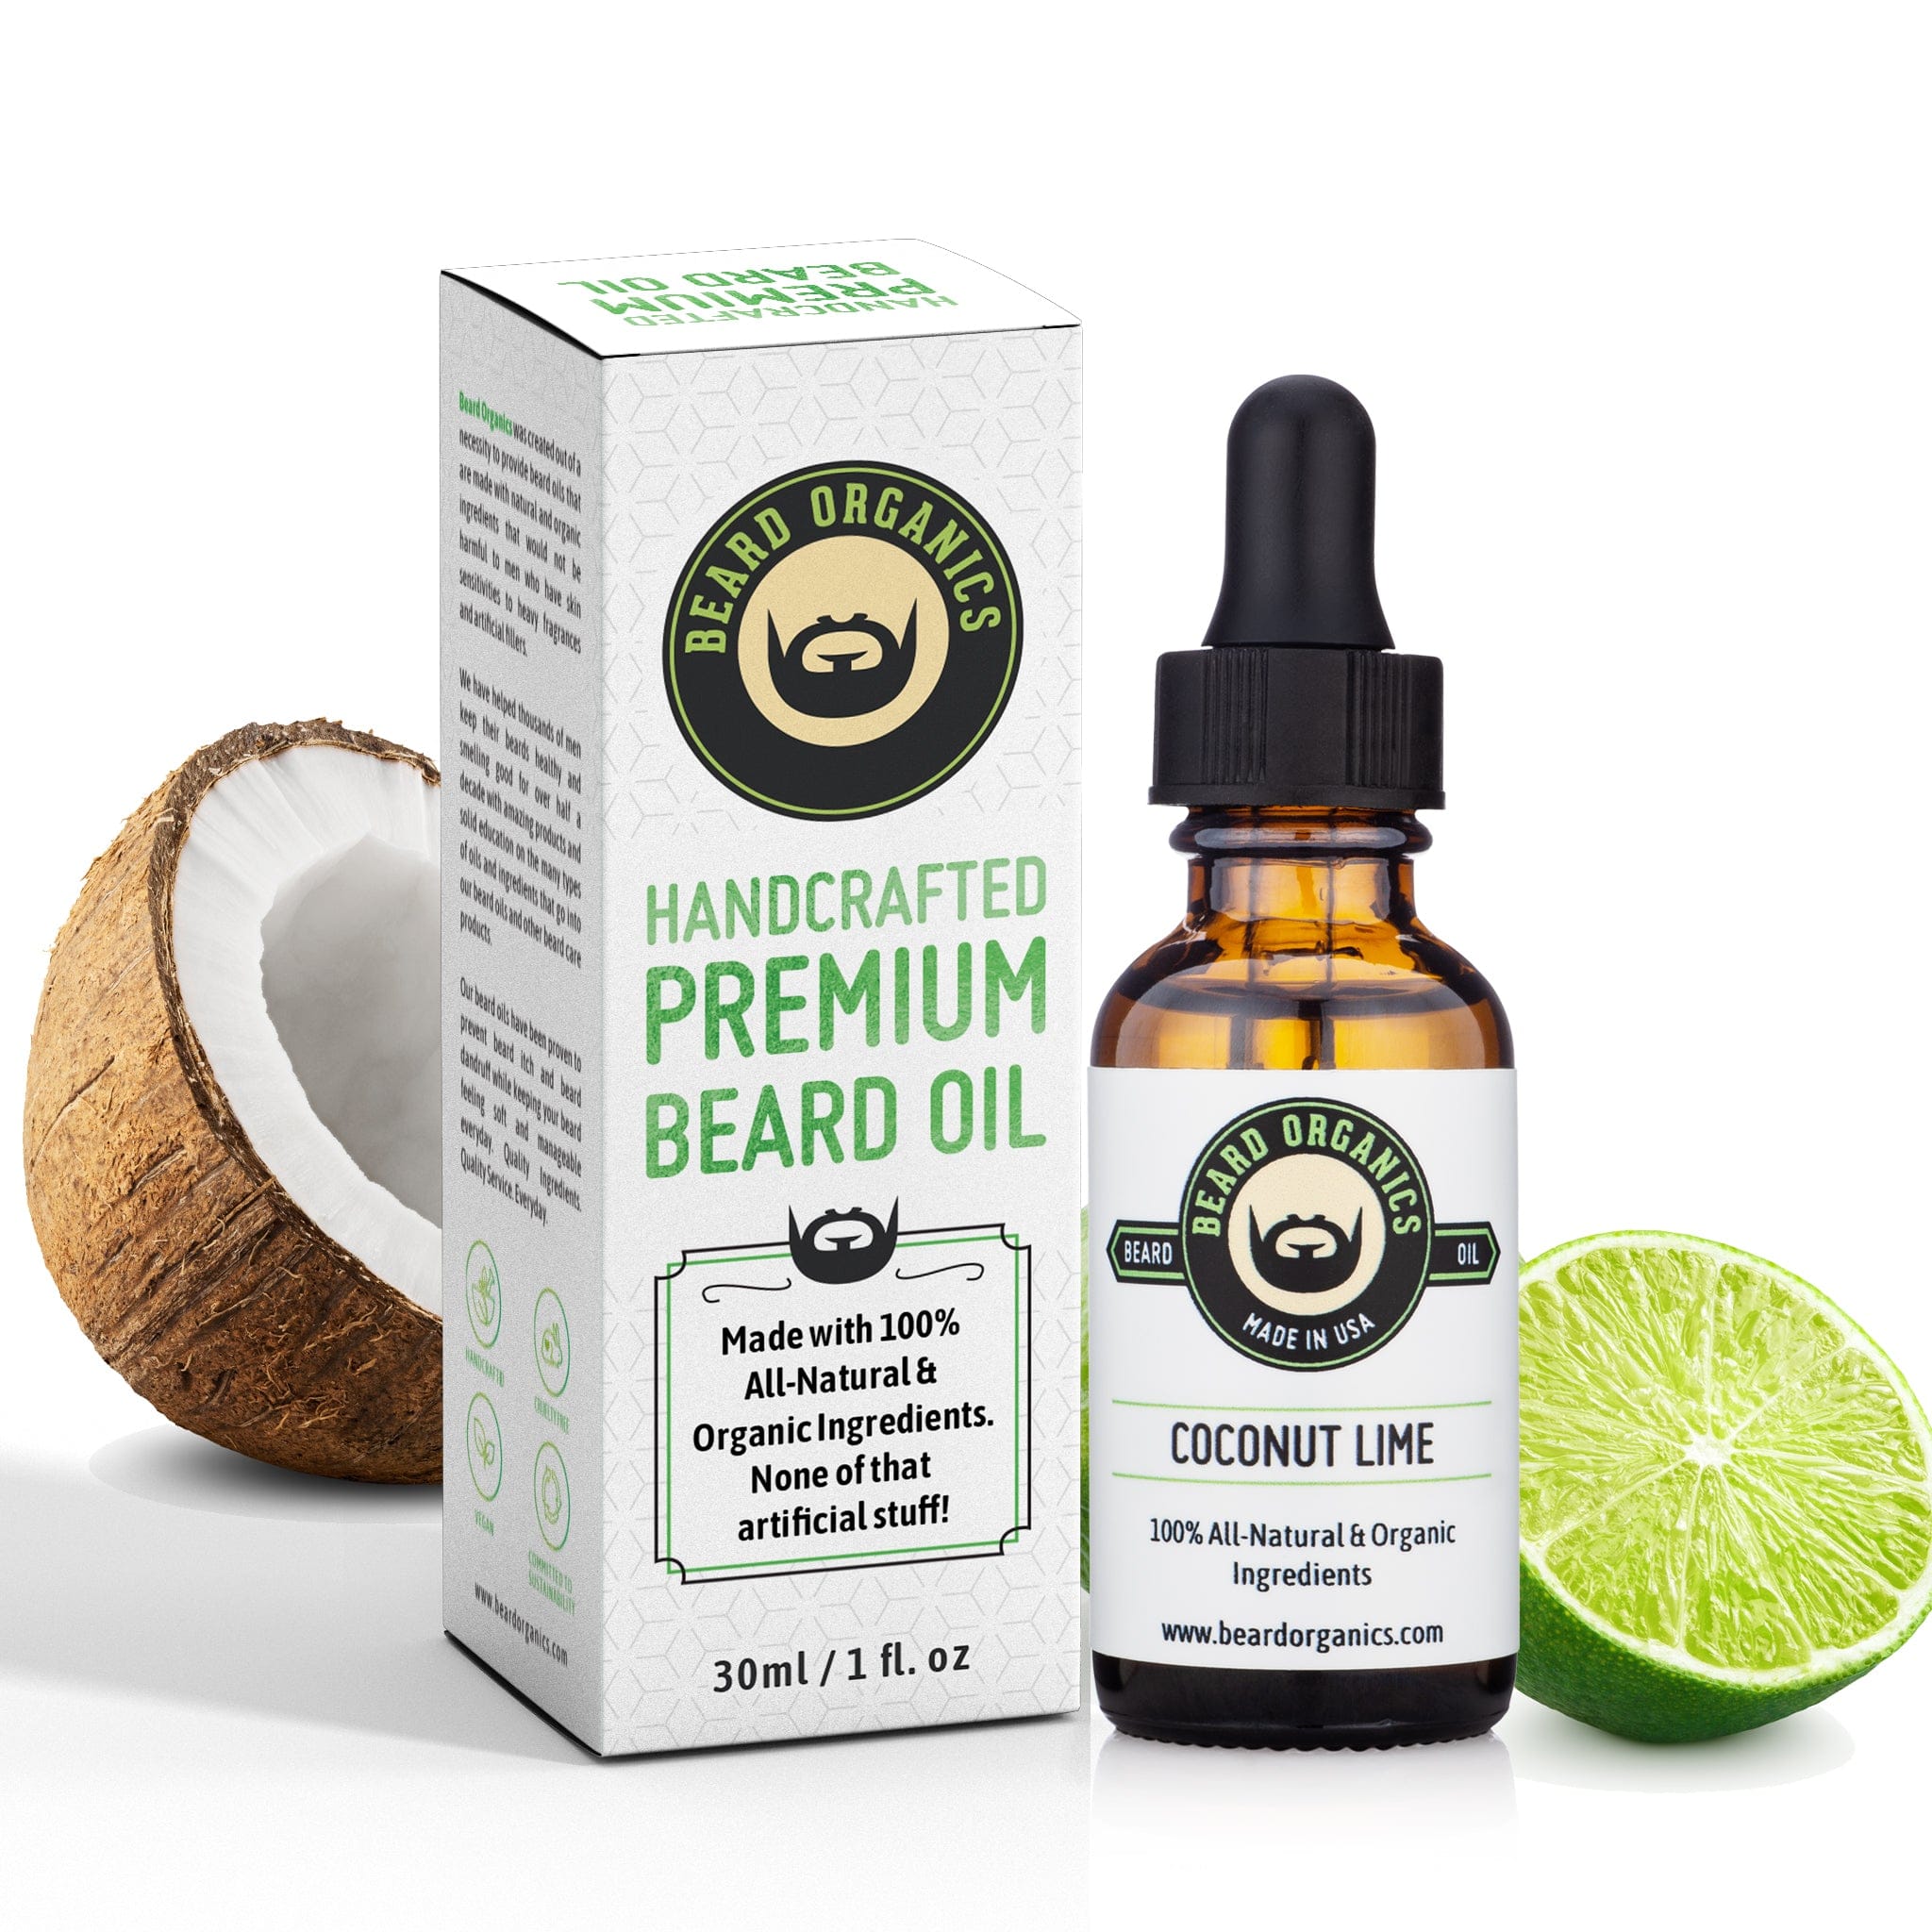 Coconut Lime Beard Oil by Beard Organics